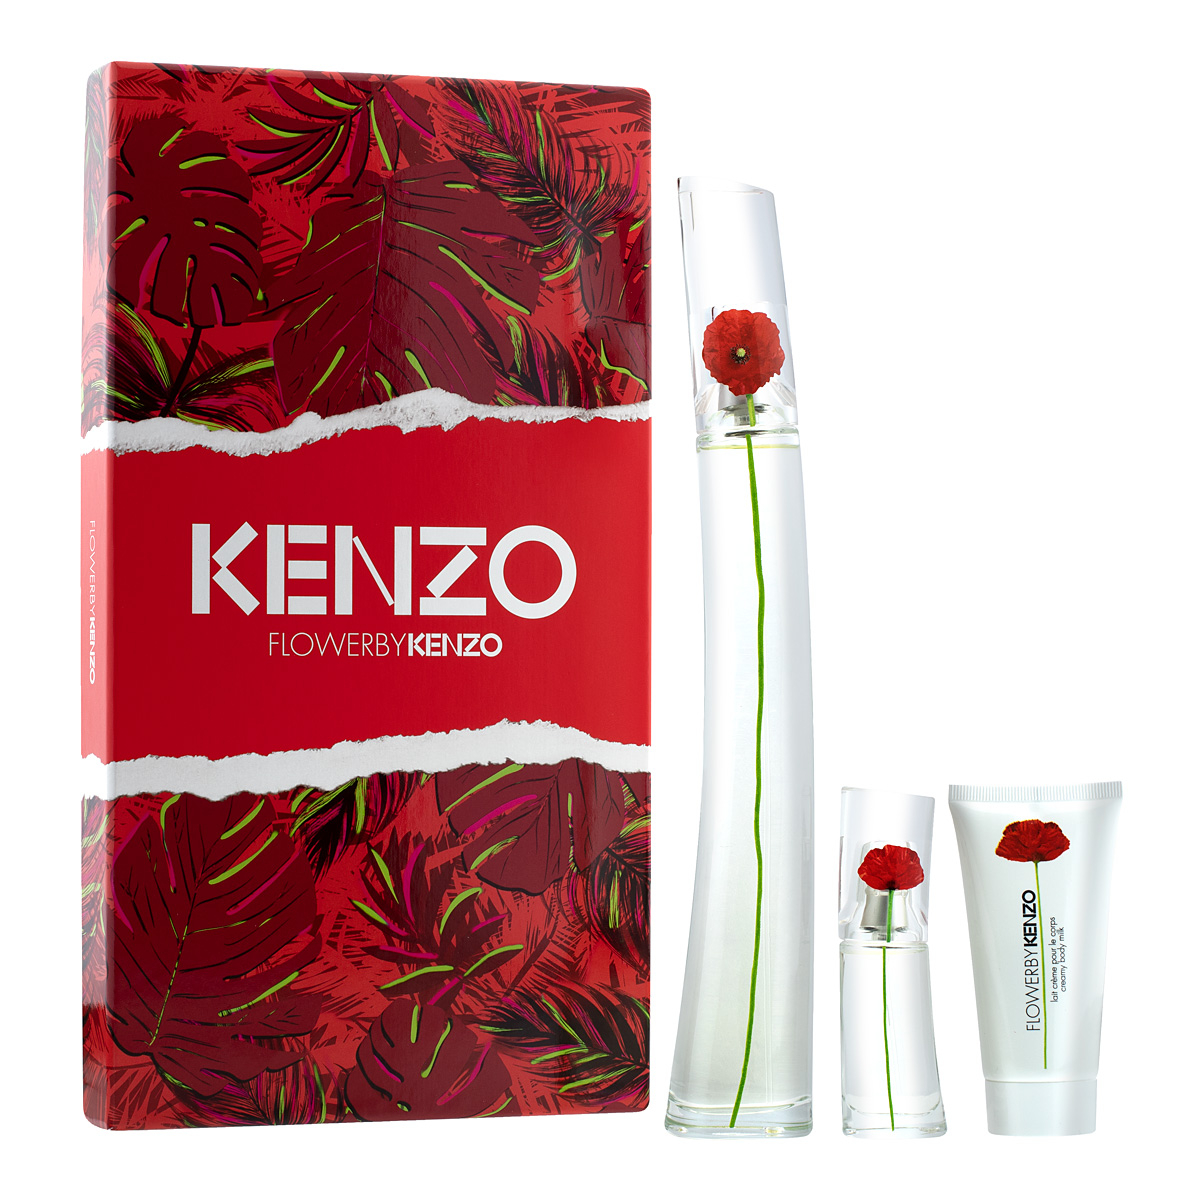 kenzo flower gift set